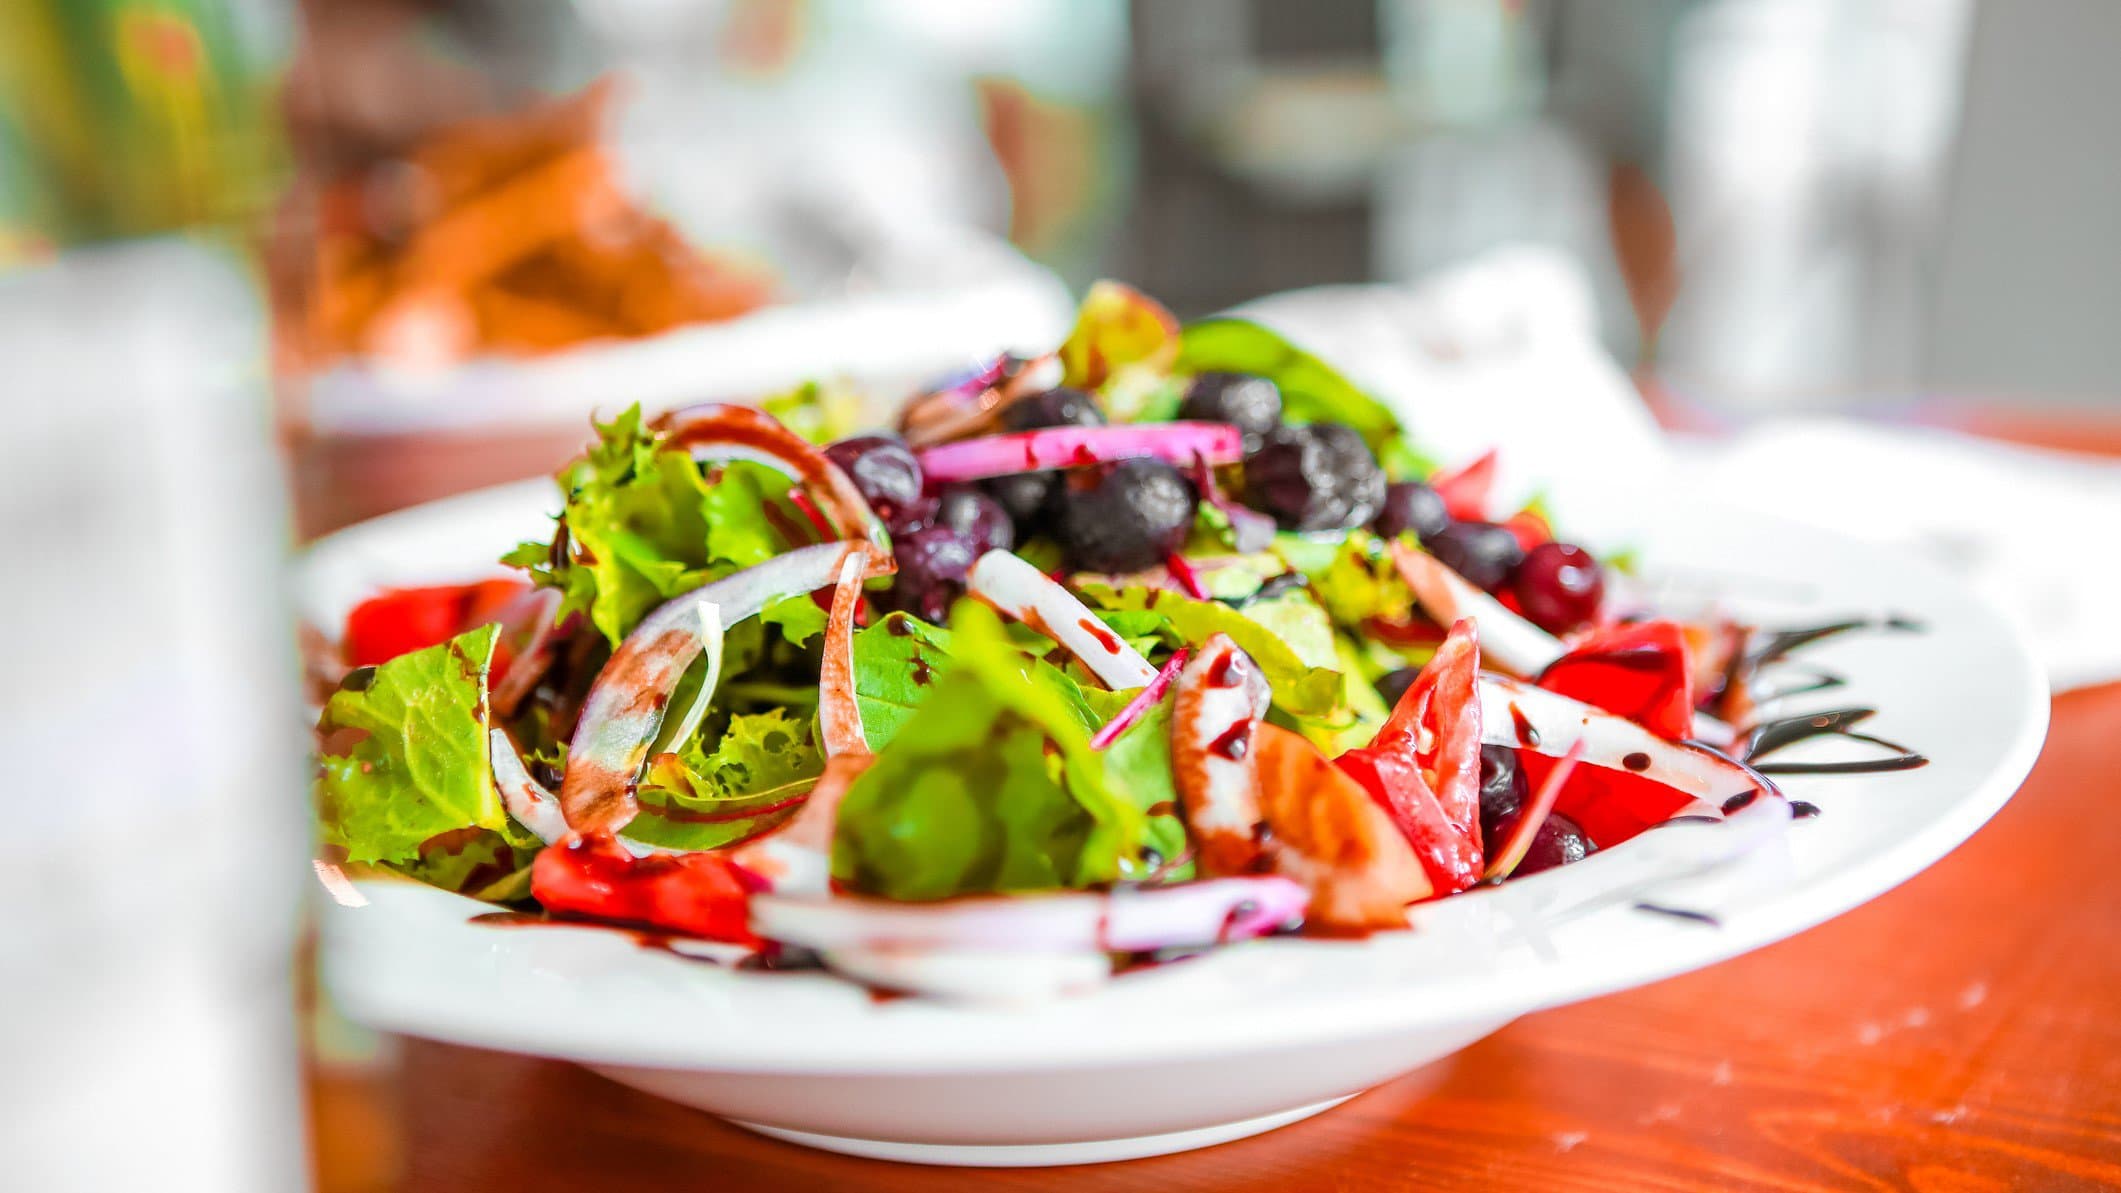 Frischer Frühlingssalat mit Tomaten, roten Zwiebeln, Oliven und Erdbeer-Vinaigrette in weißem Teller auf rotem Untergrund. Frontalansicht